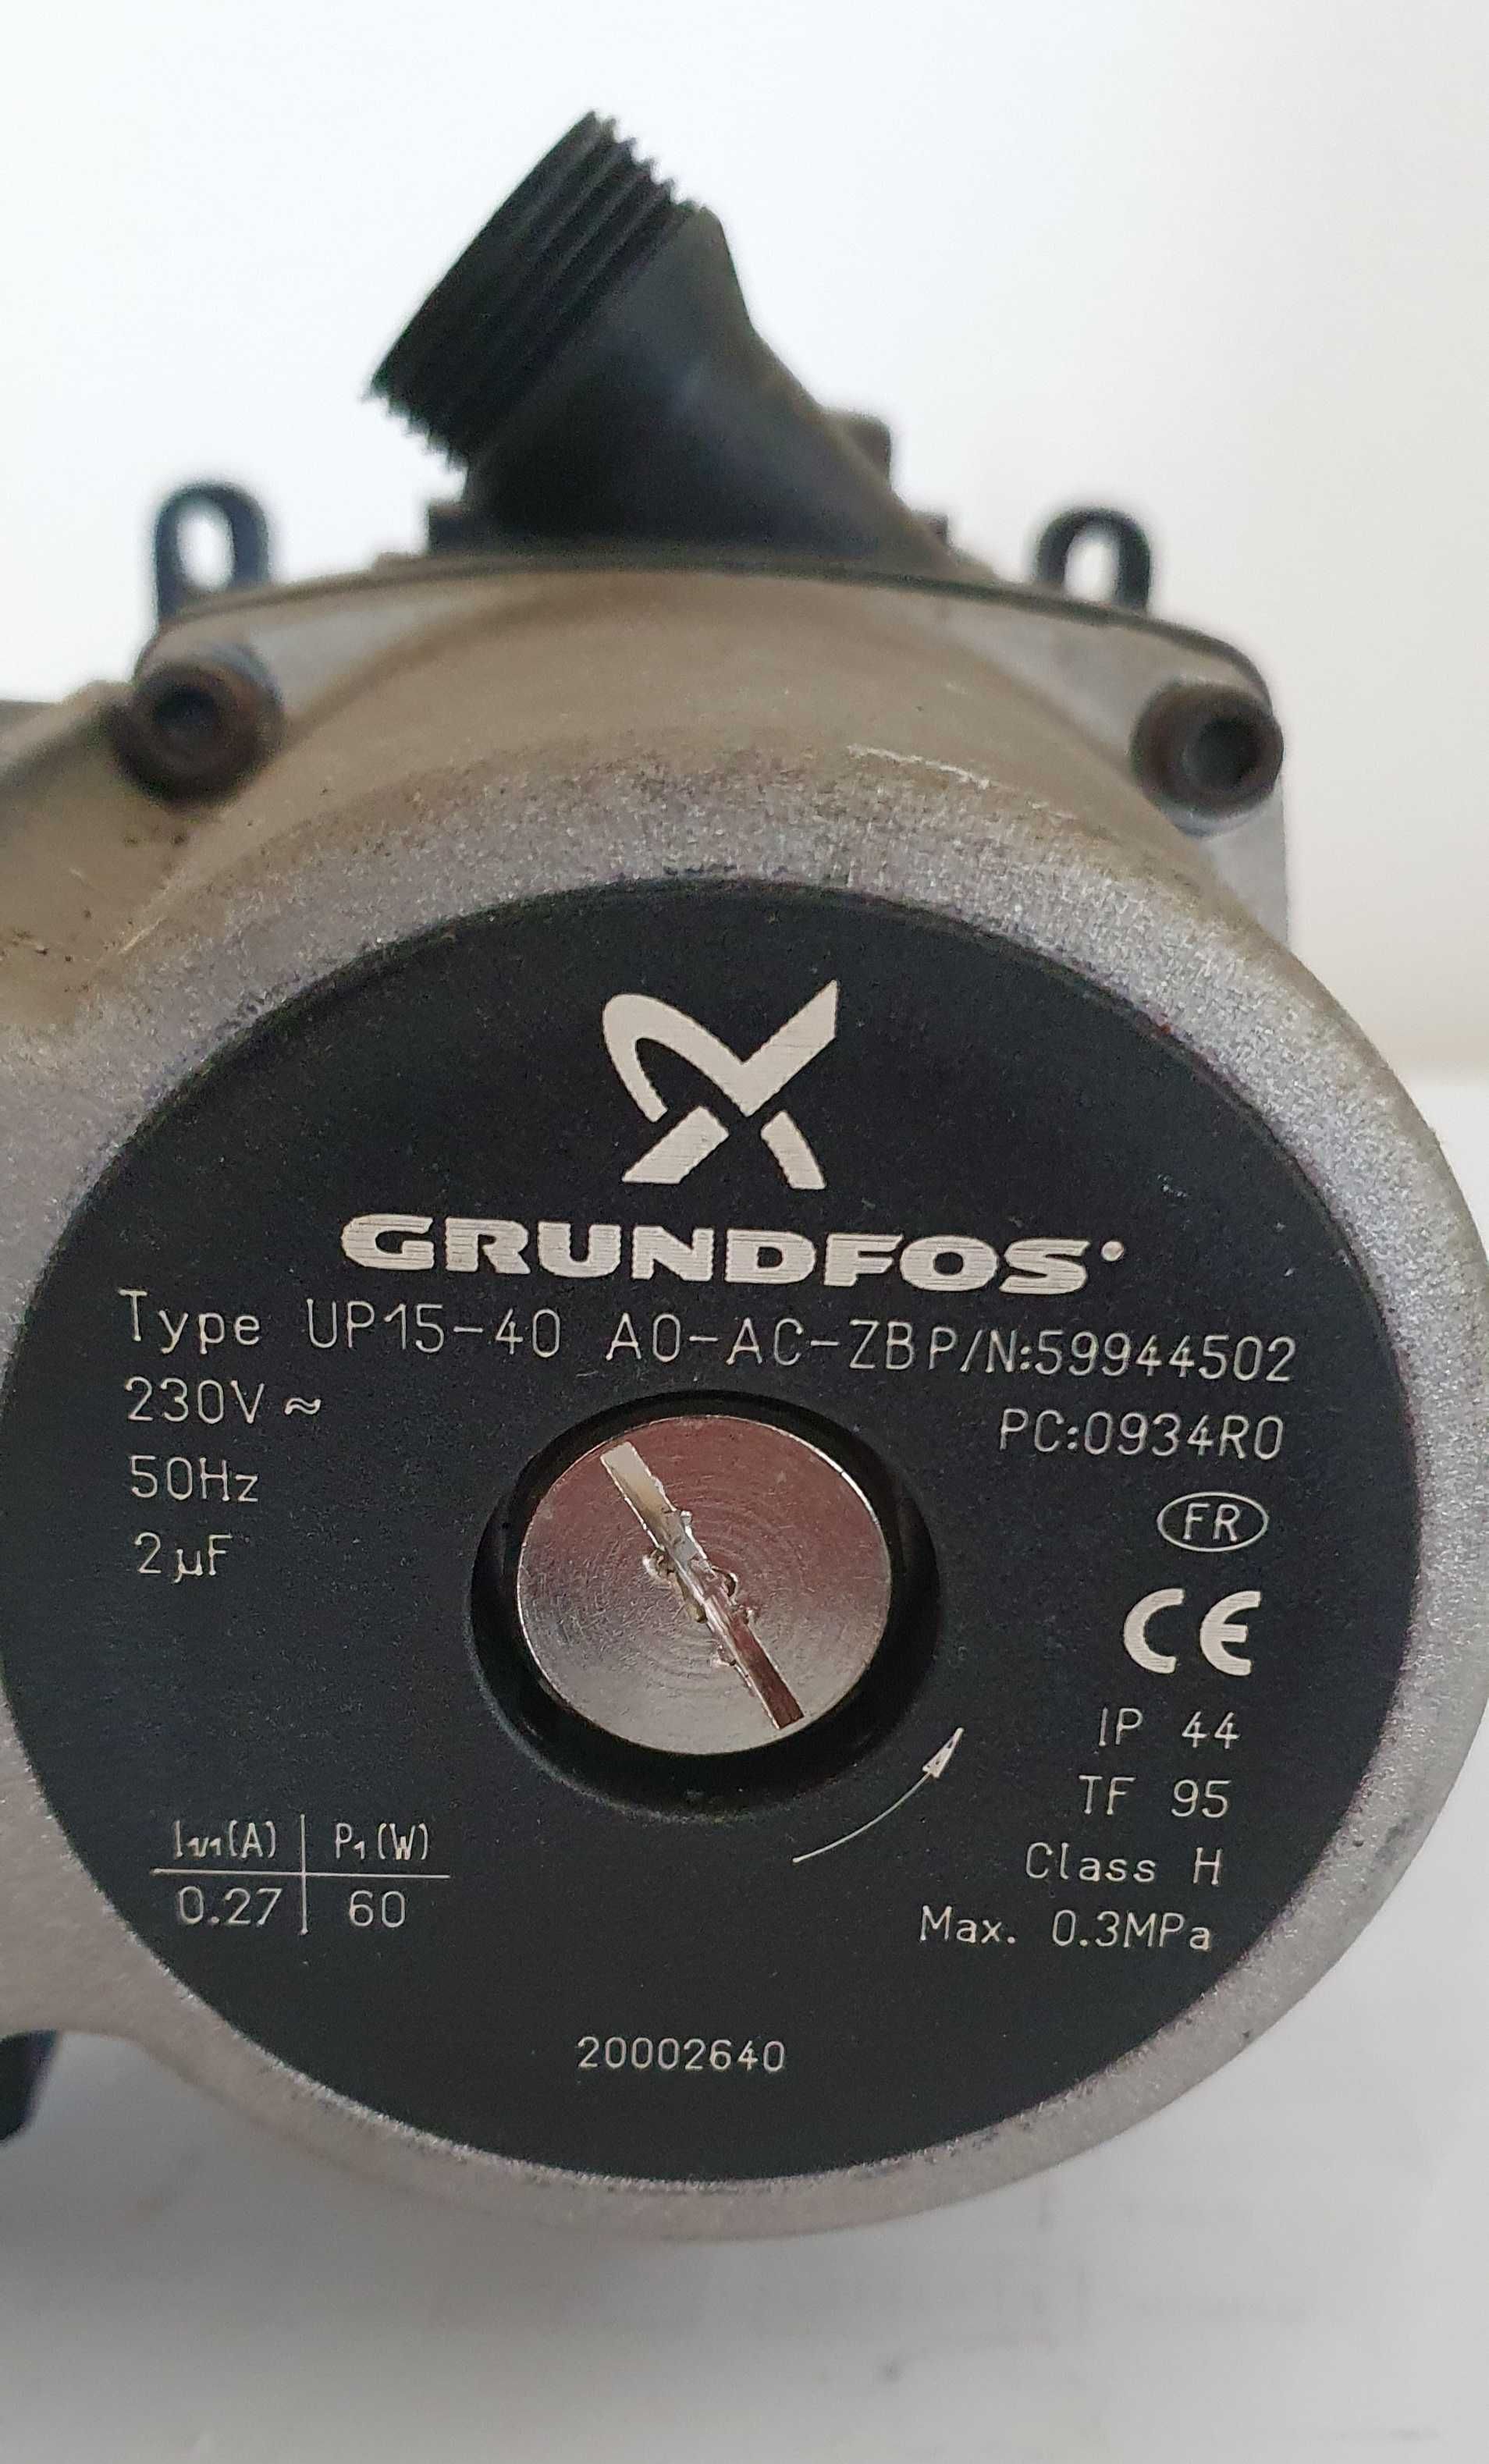 Pompa recirculare Grundfos 15-40 / UPS 15-50 SO